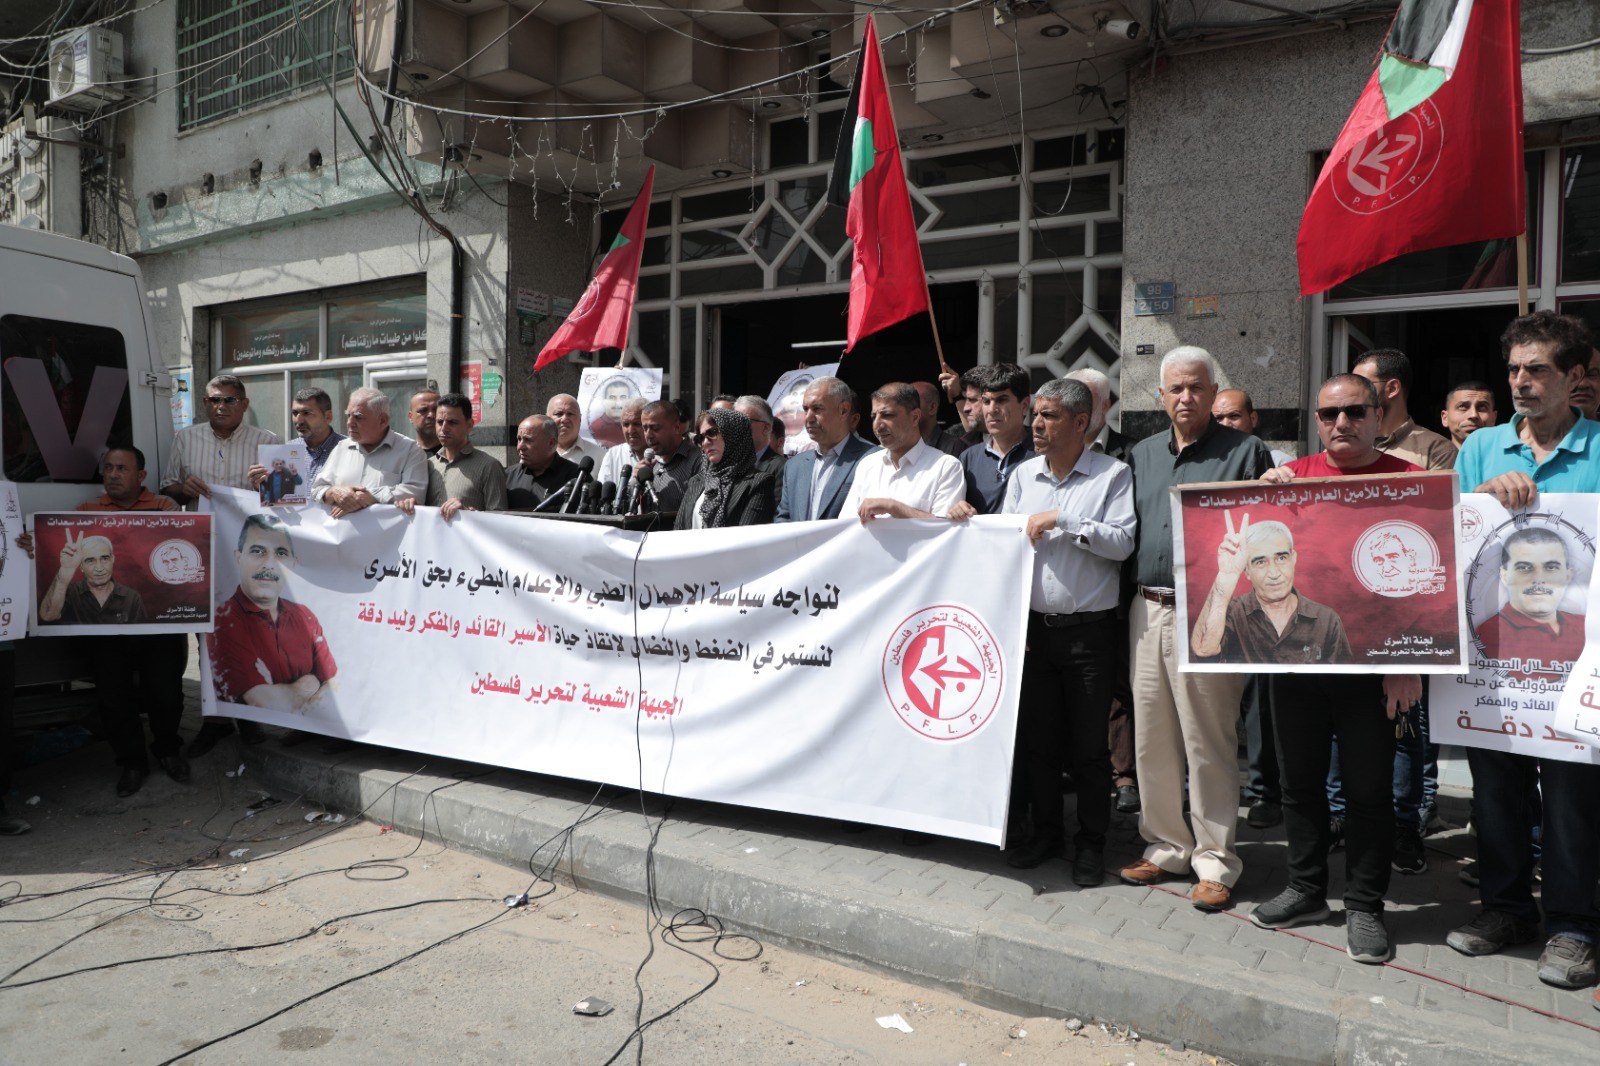 لمؤتمر الصحفي الذي نظمته الجبهة الشعبيّة لتحرير فلسطين أمام برج شوا وحصري بمدينة غزّة 44.jpg